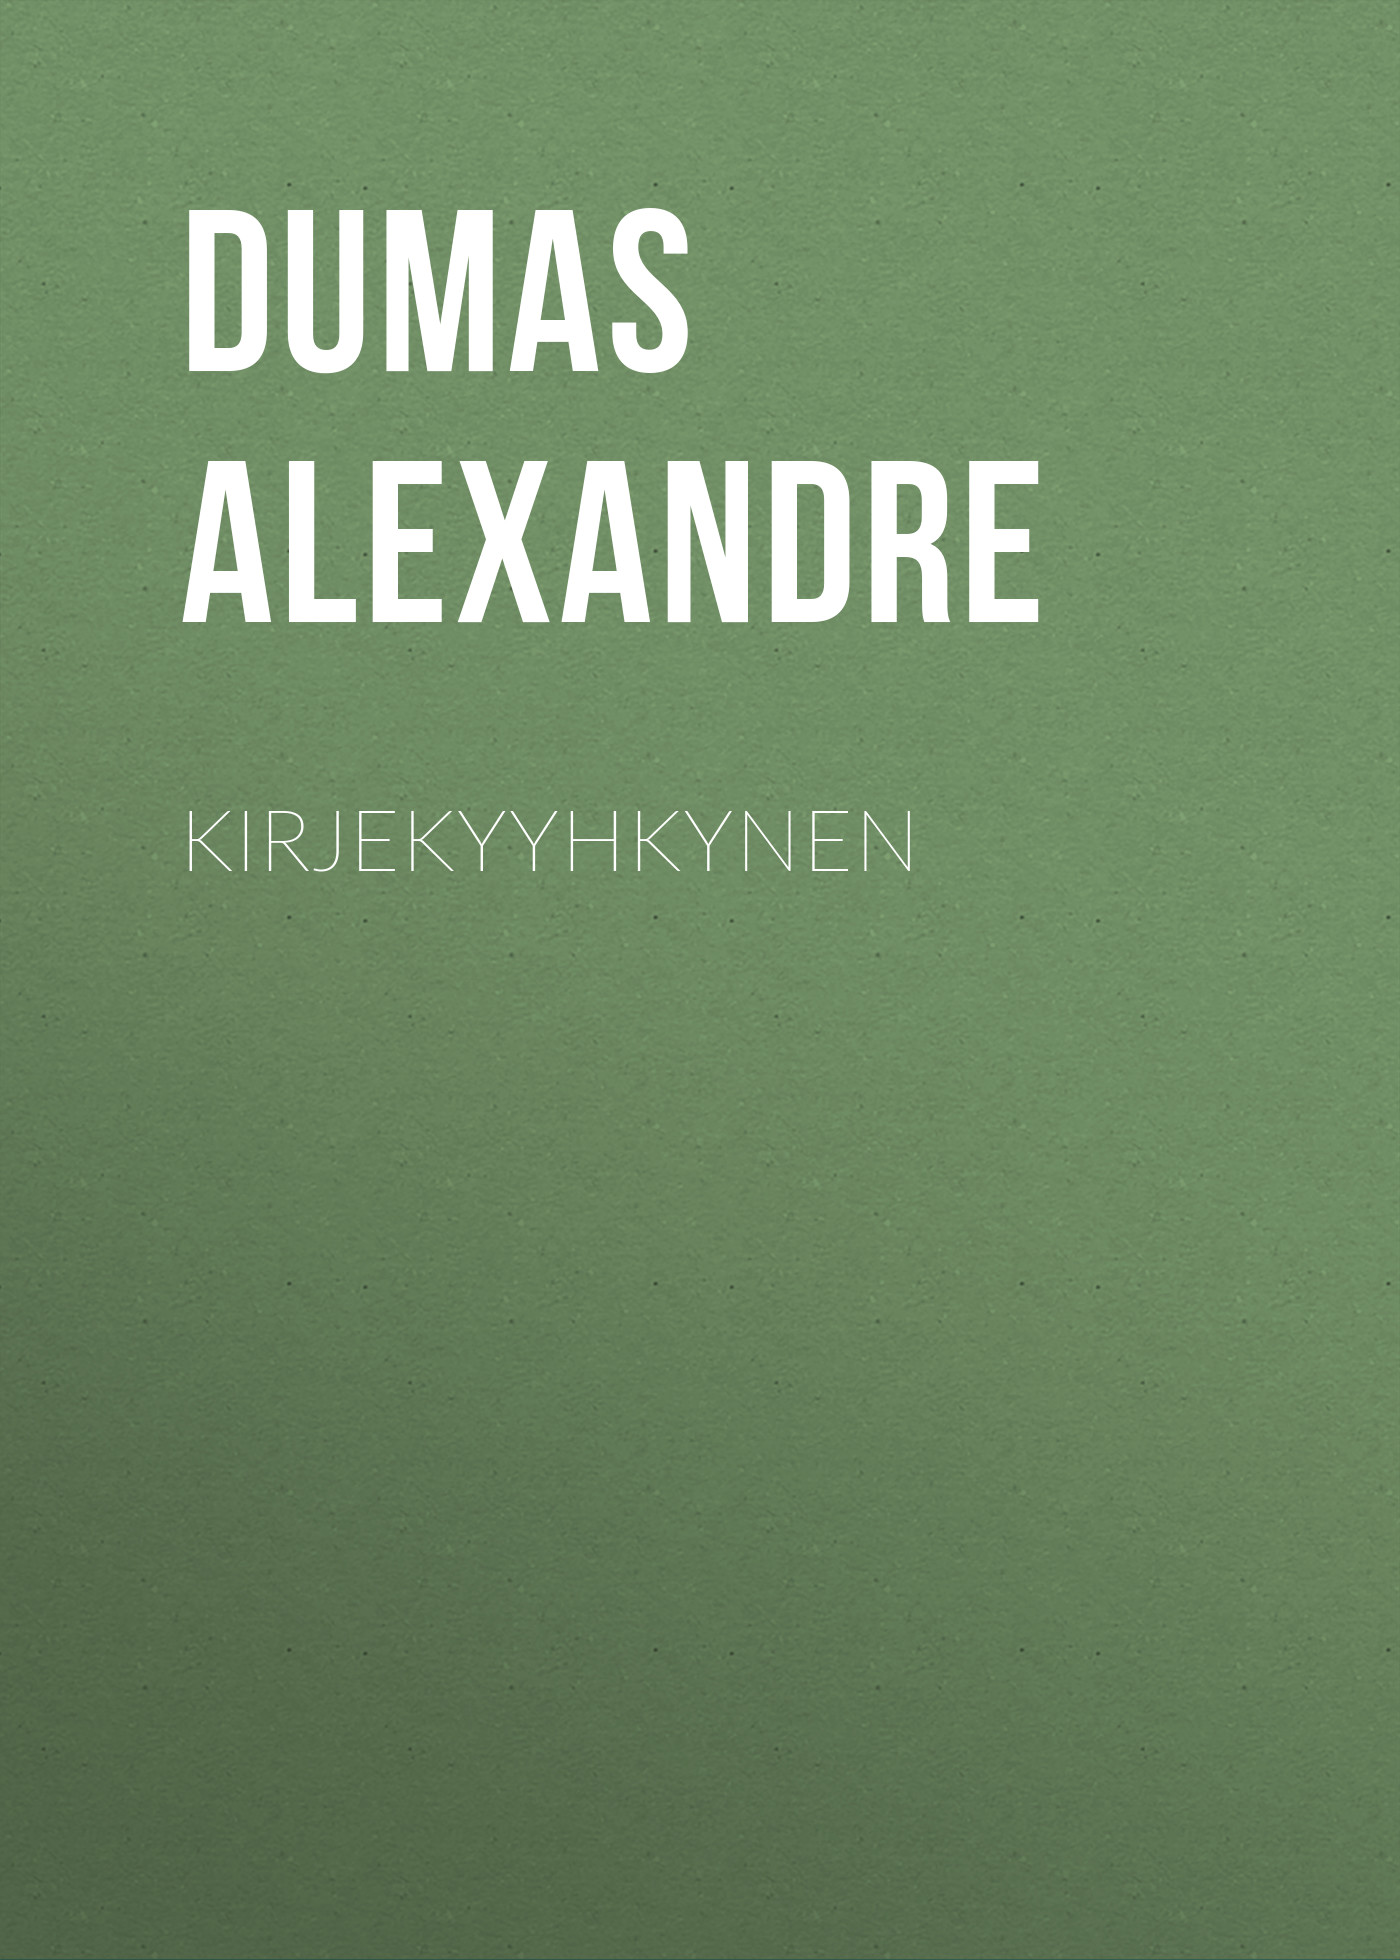 Книга Kirjekyyhkynen из серии , созданная Alexandre Dumas, может относится к жанру Зарубежная старинная литература, Зарубежная классика. Стоимость электронной книги Kirjekyyhkynen с идентификатором 24621869 составляет 0 руб.